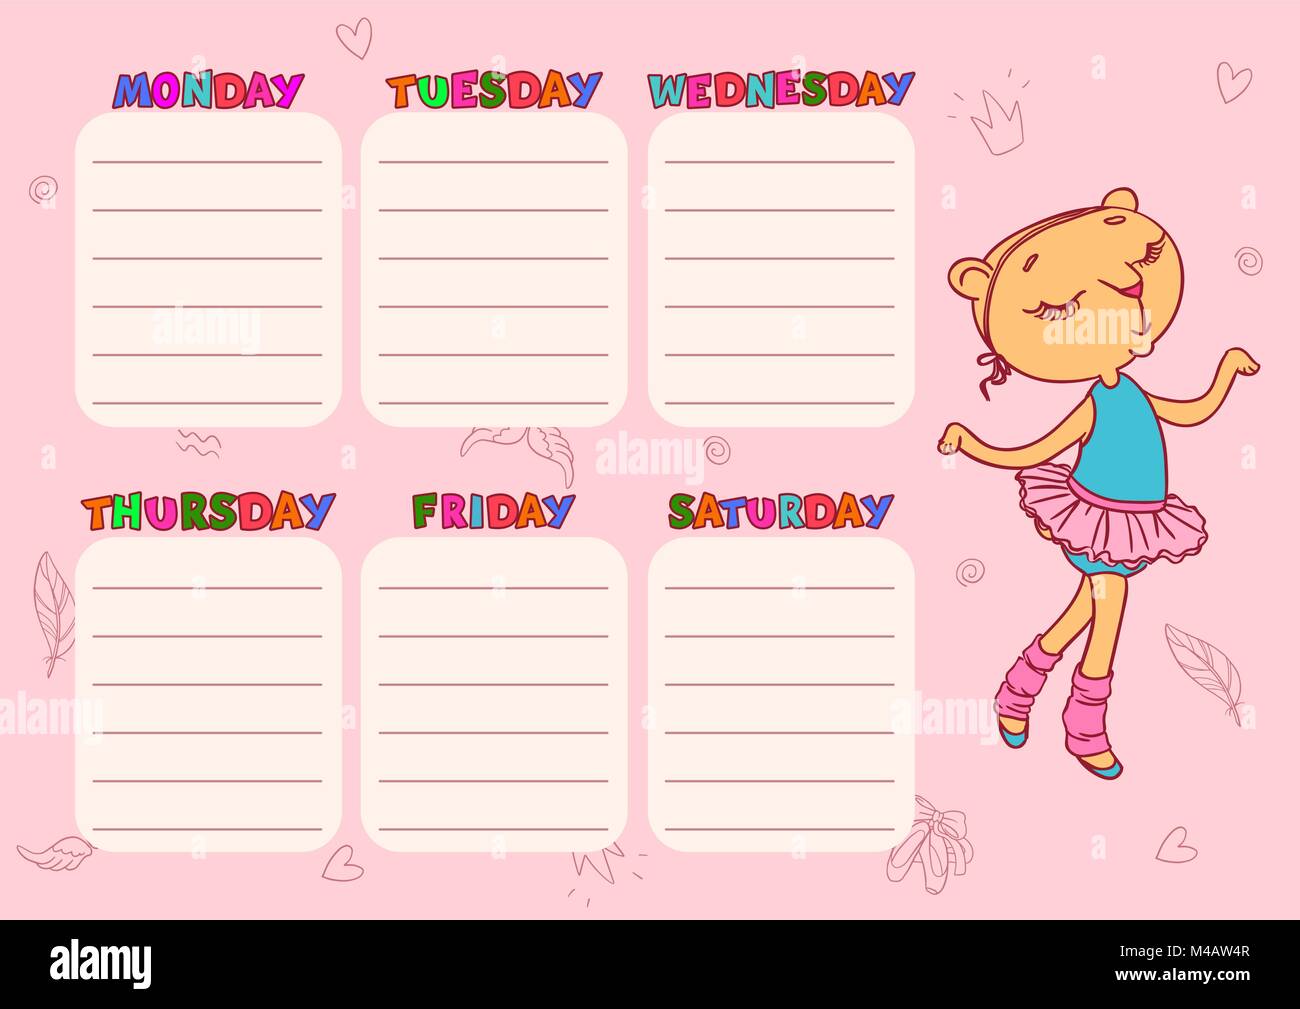 Cute Schedule Template from c8.alamy.com